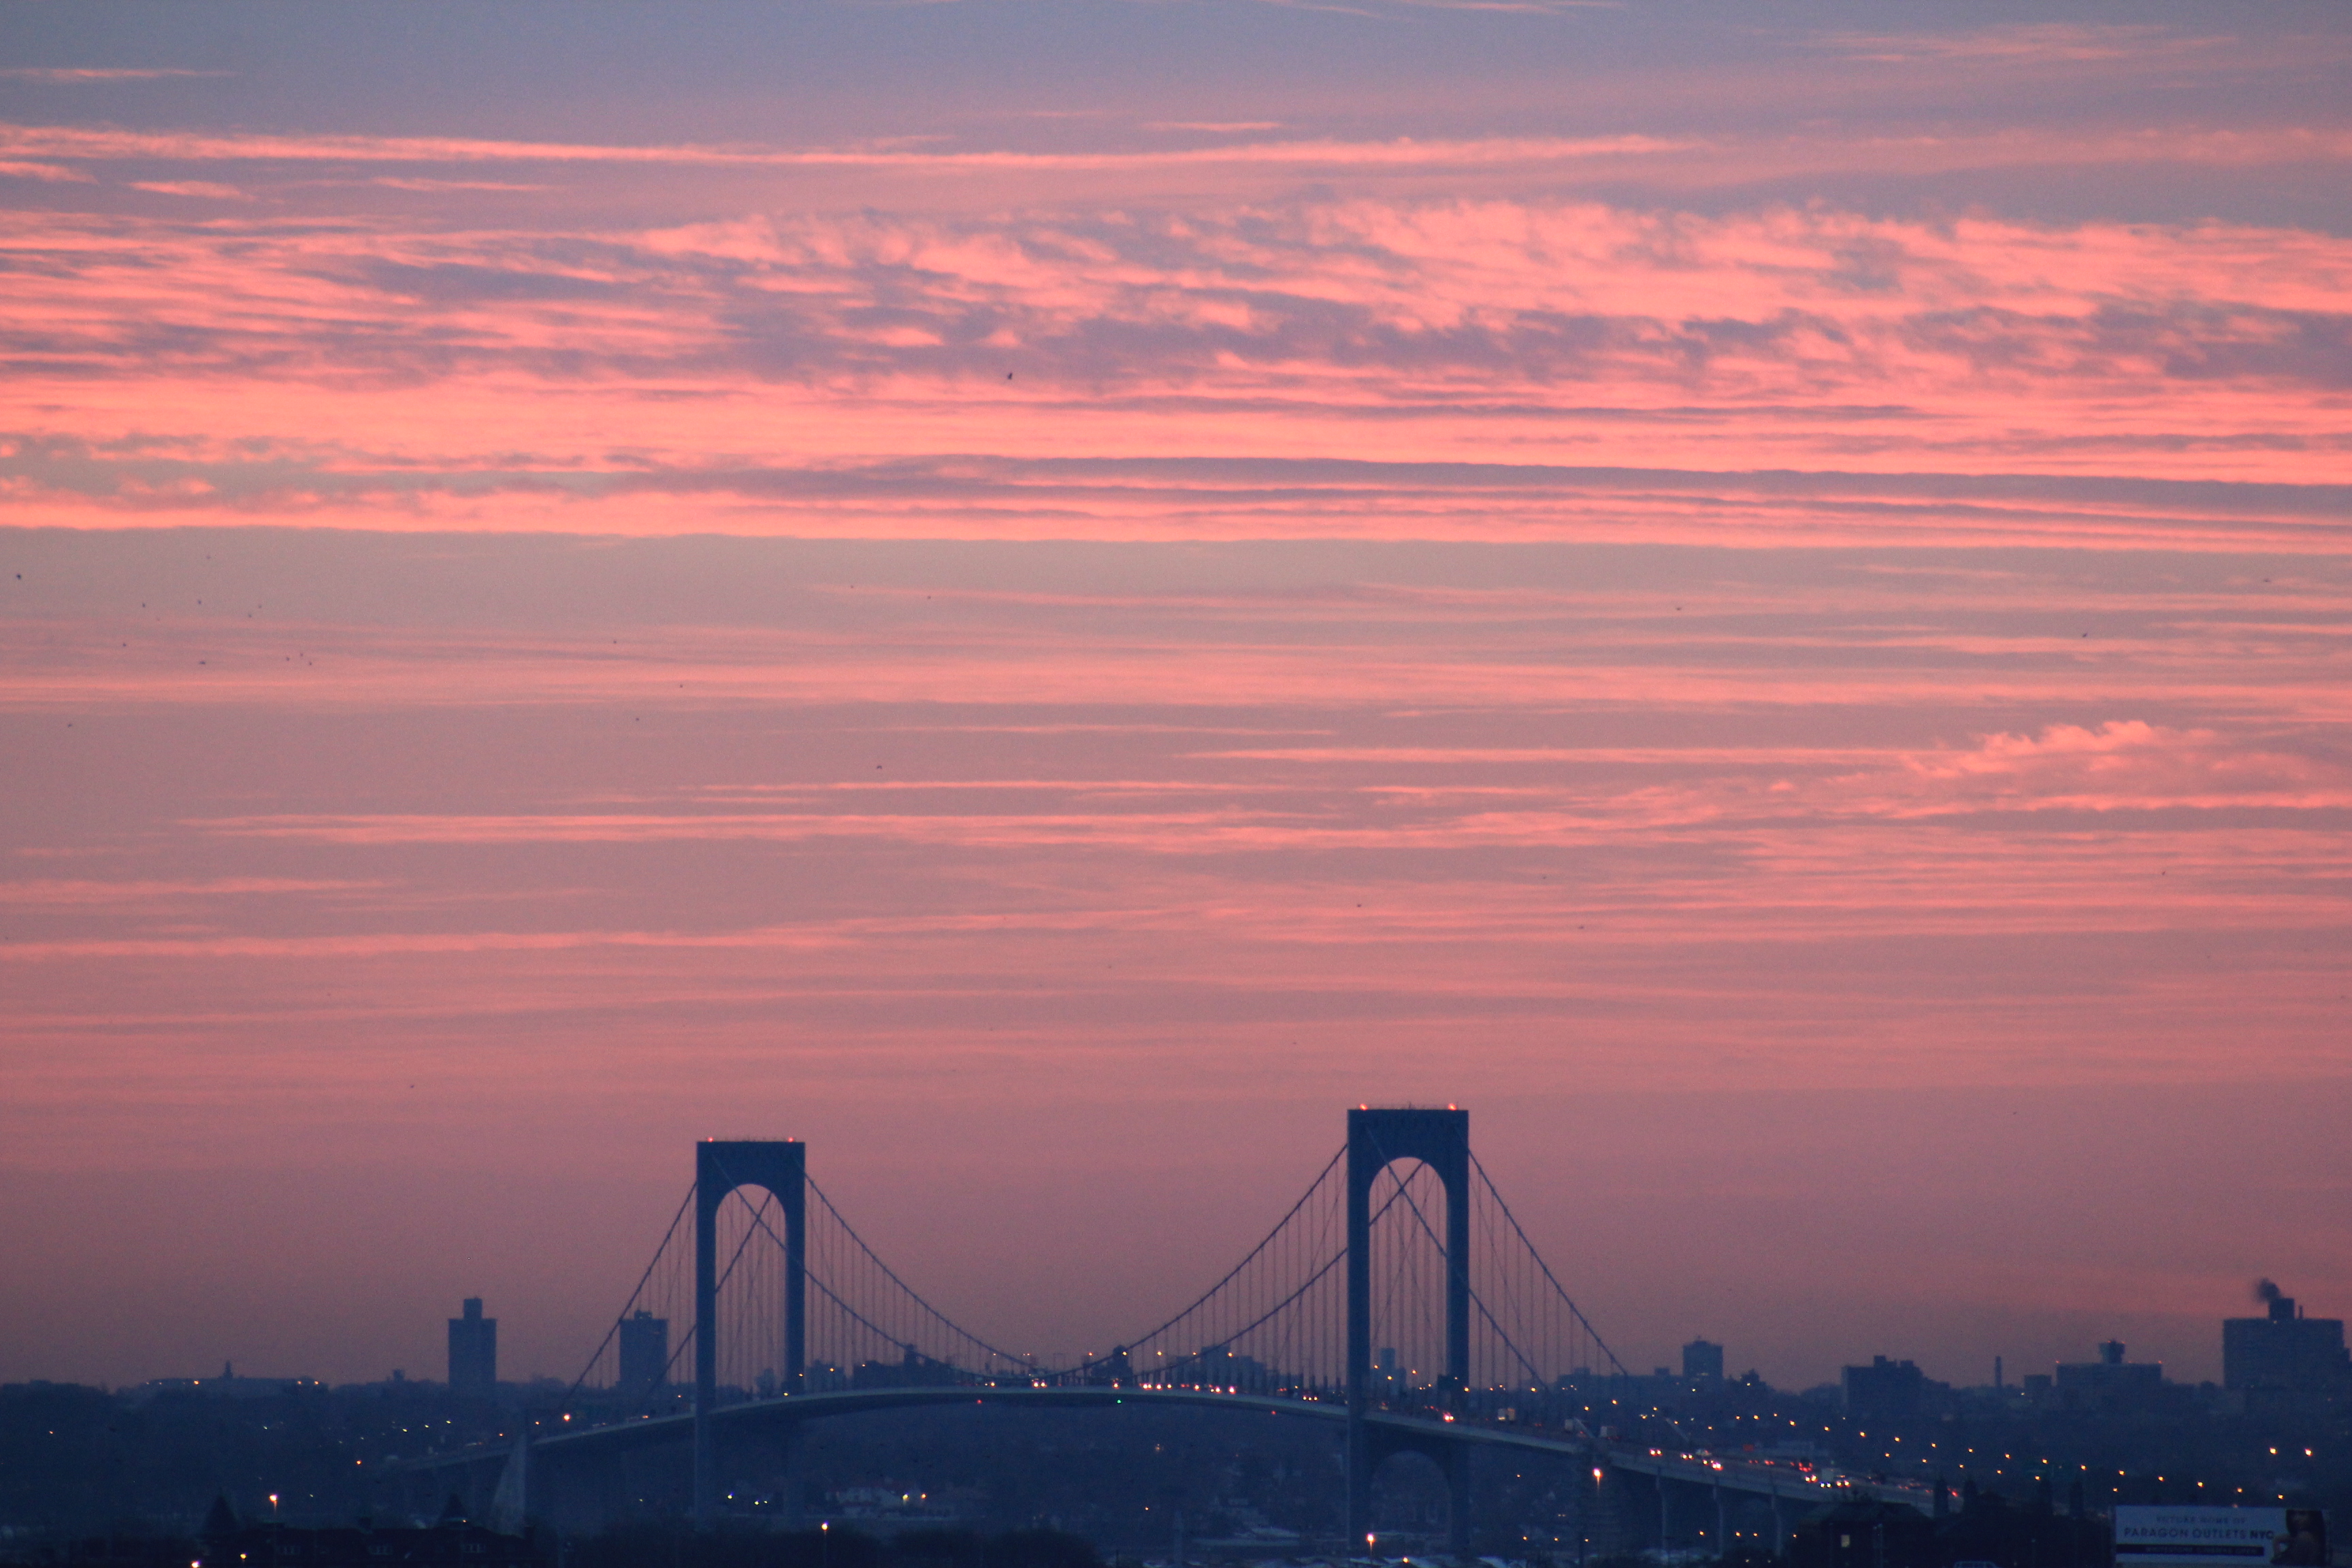 Bridge over the sunrise